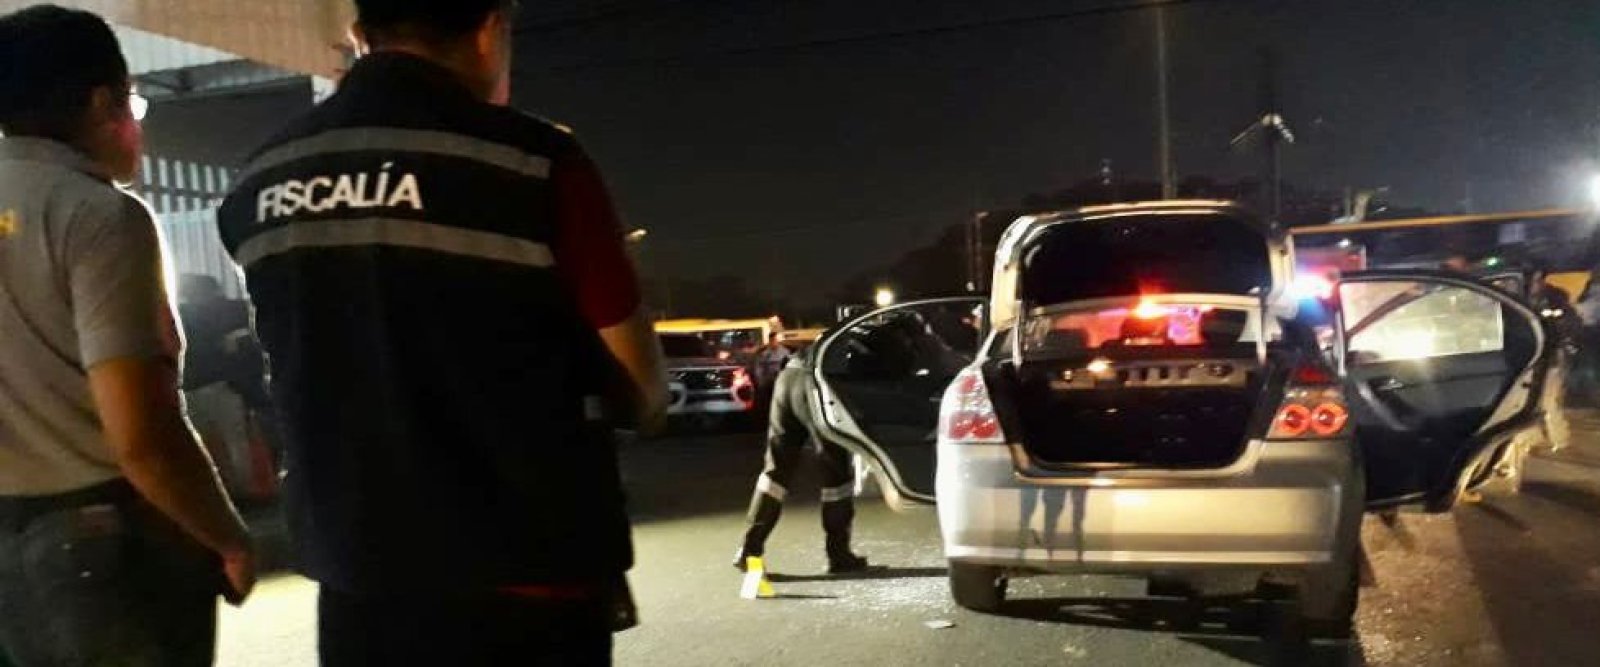 Asesinan a fiscal en Ecuador mientras conducía su vehículo